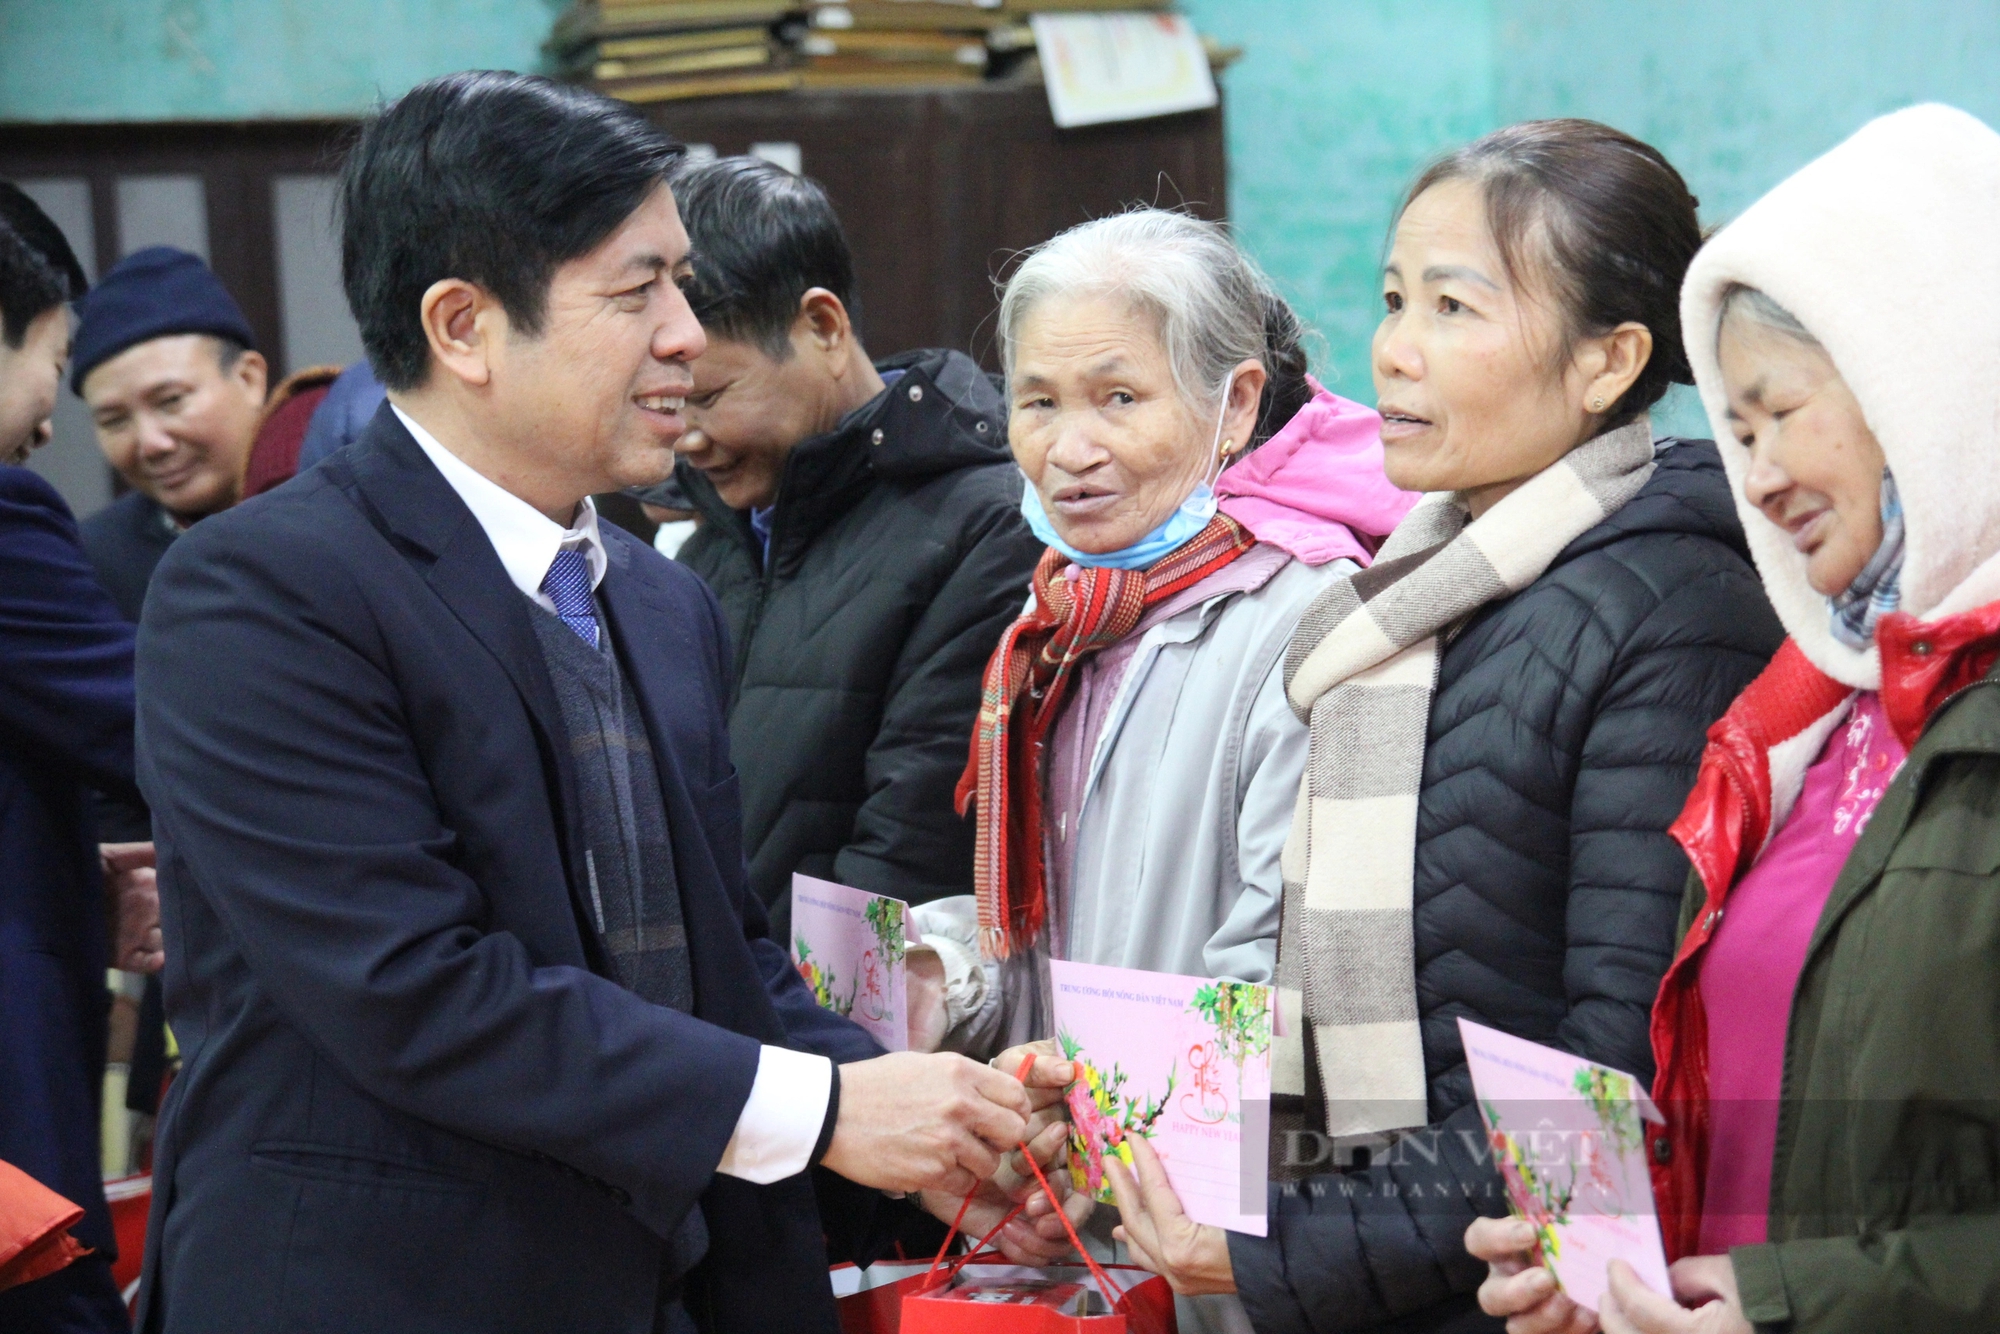 Phó Chủ tịch TƯ Hội NDVN Nguyễn Xuân Định thăm, tặng quà Tết hội viên, nông dân có hoàn cảnh khó khăn ở Thái Bình- Ảnh 8.